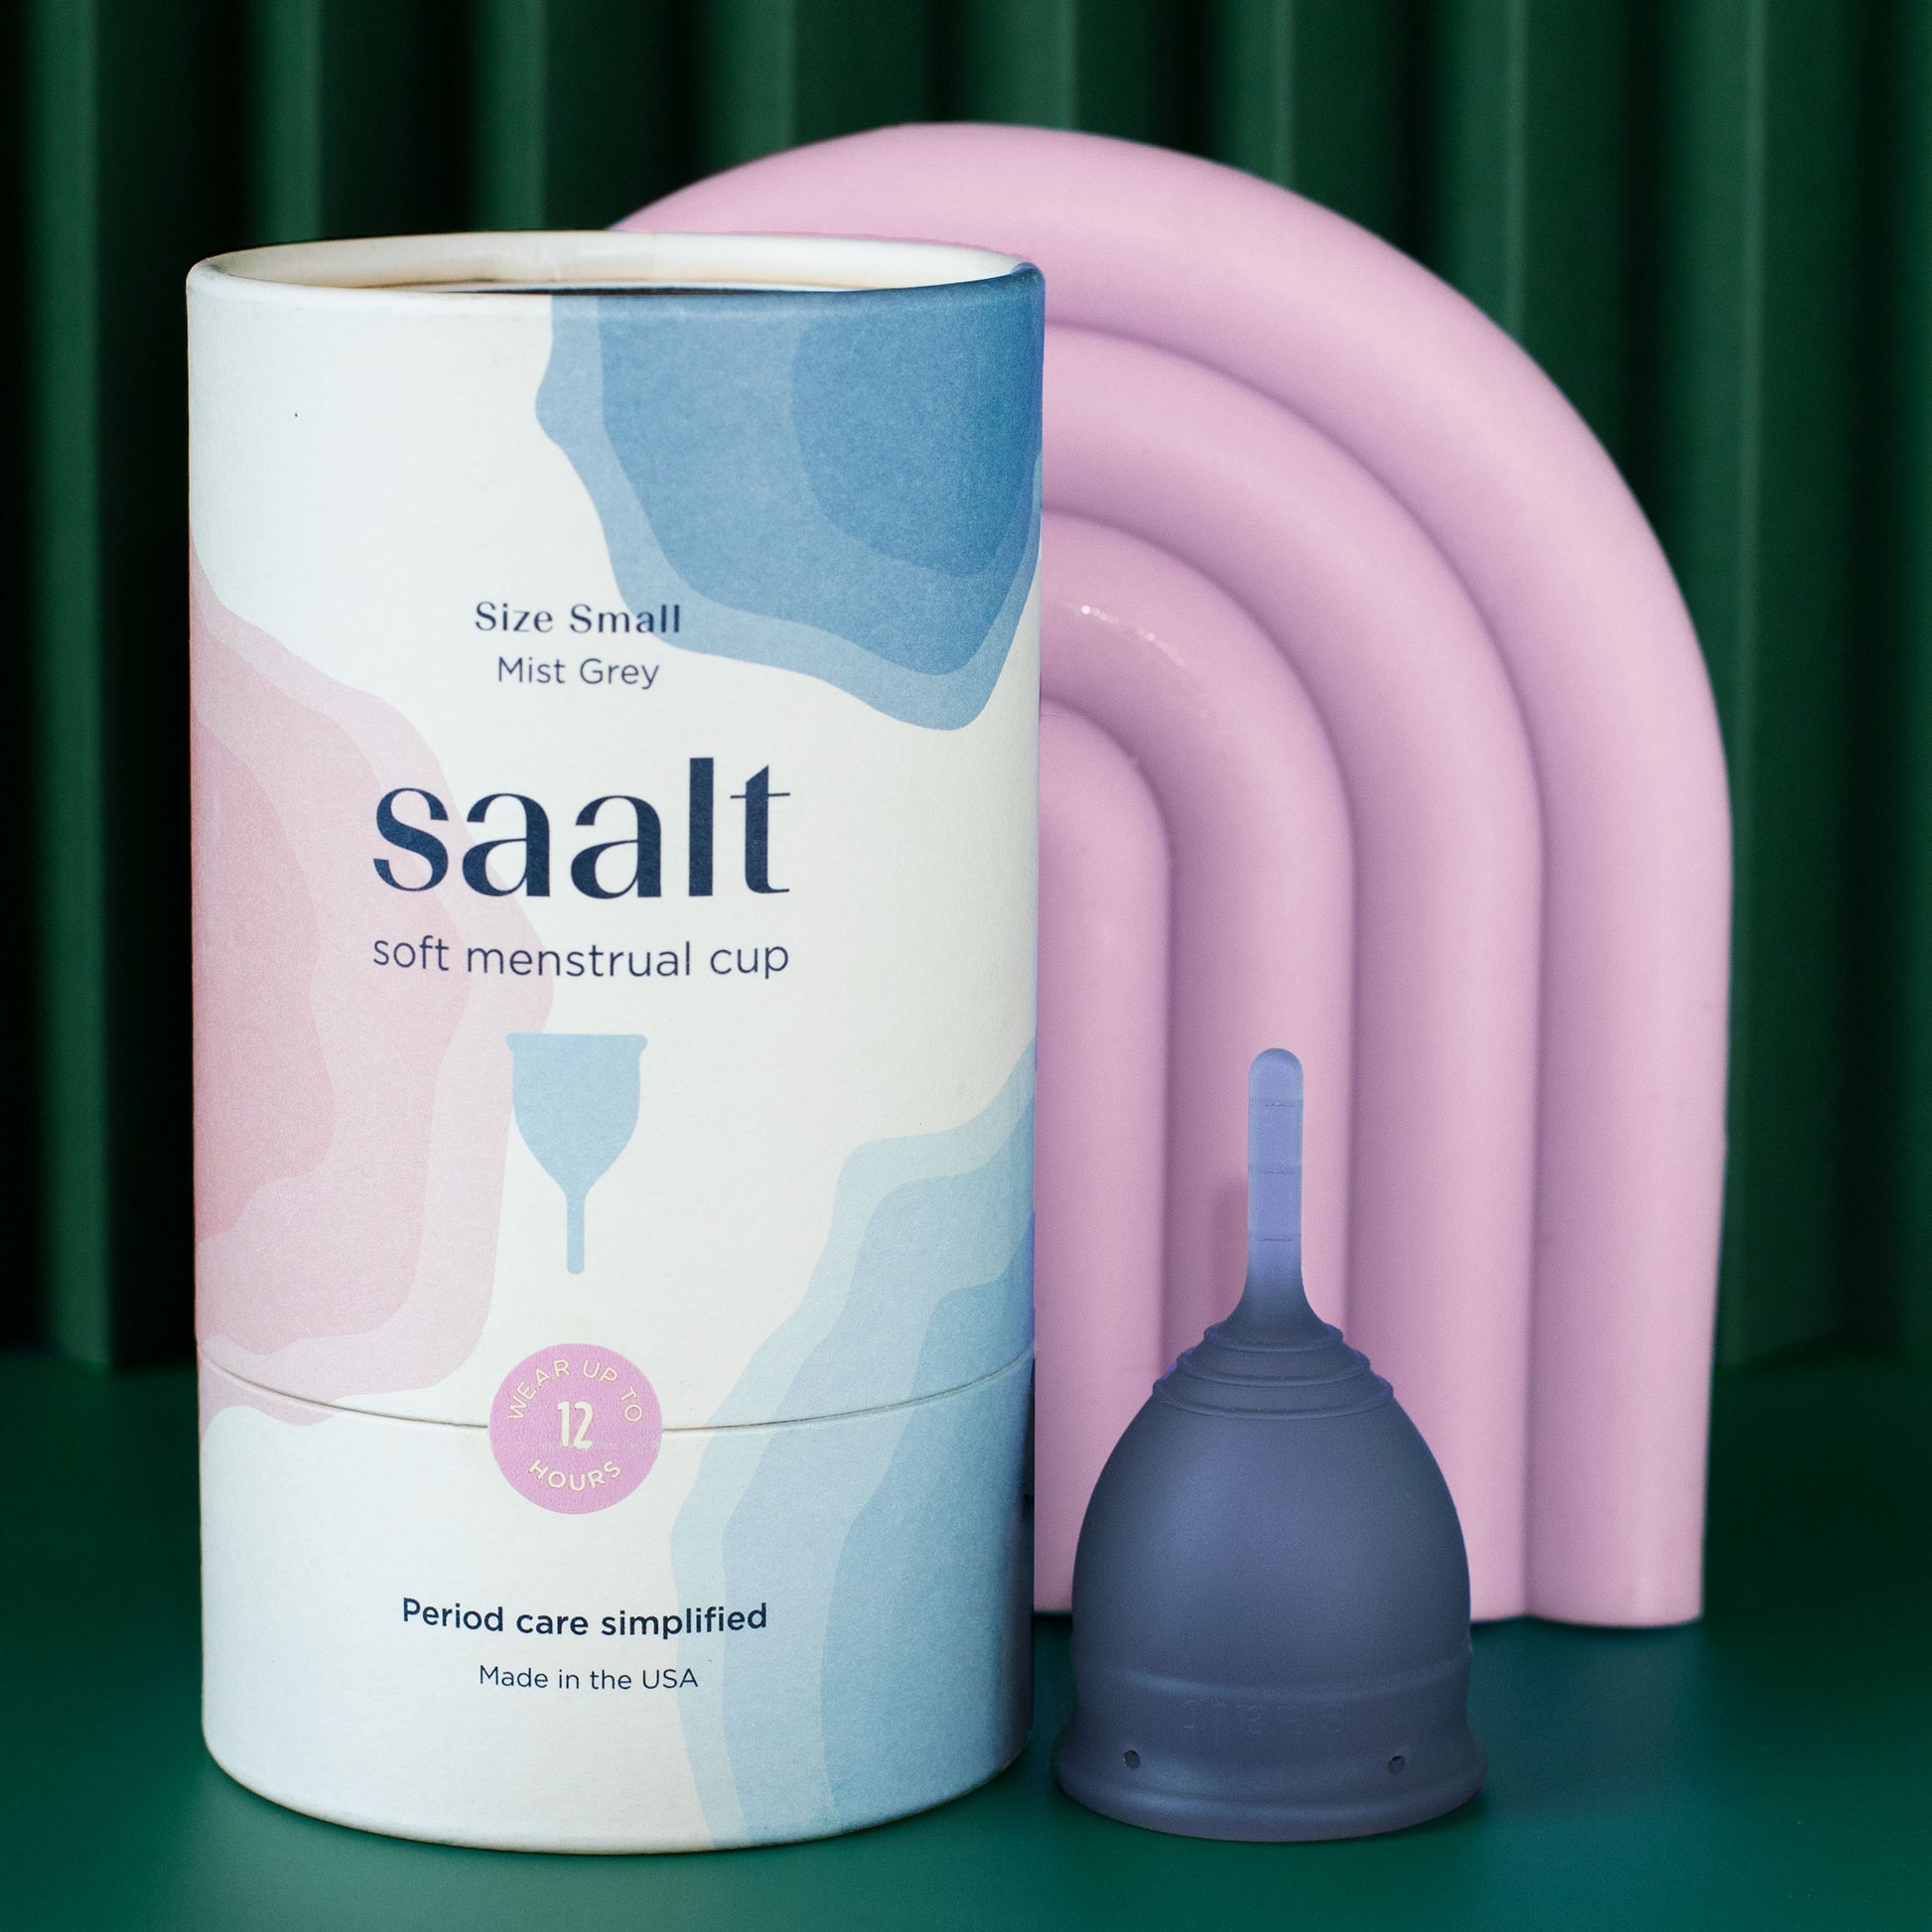 Saalt Soft menstrual cup Small mist grey